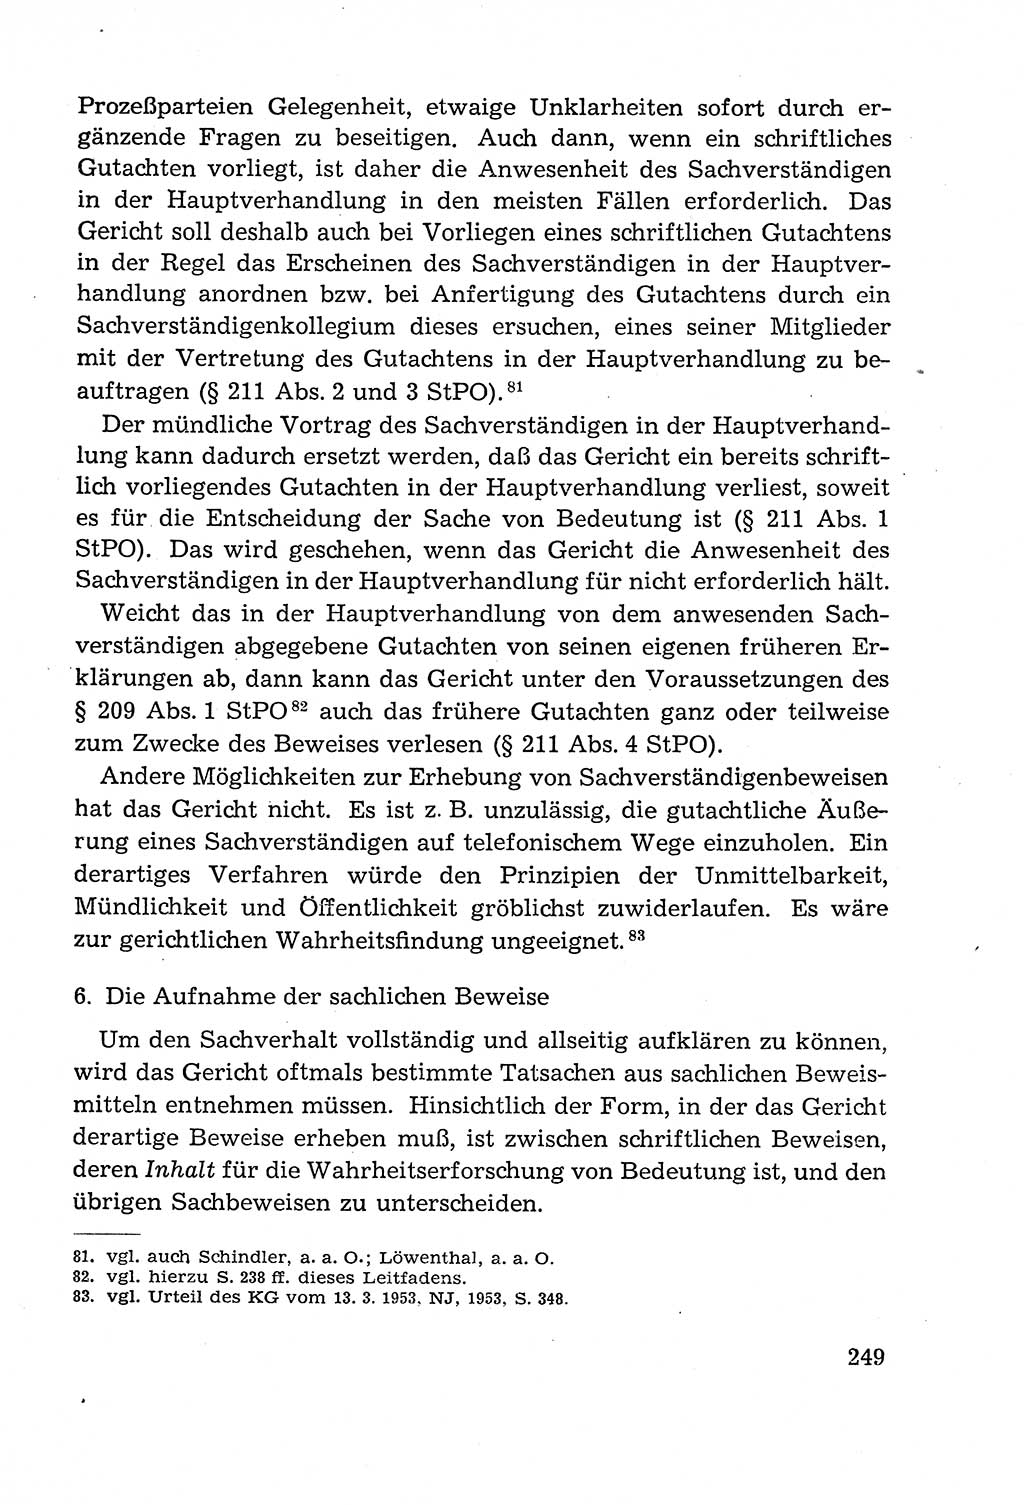 Leitfaden des Strafprozeßrechts der Deutschen Demokratischen Republik (DDR) 1959, Seite 249 (LF StPR DDR 1959, S. 249)